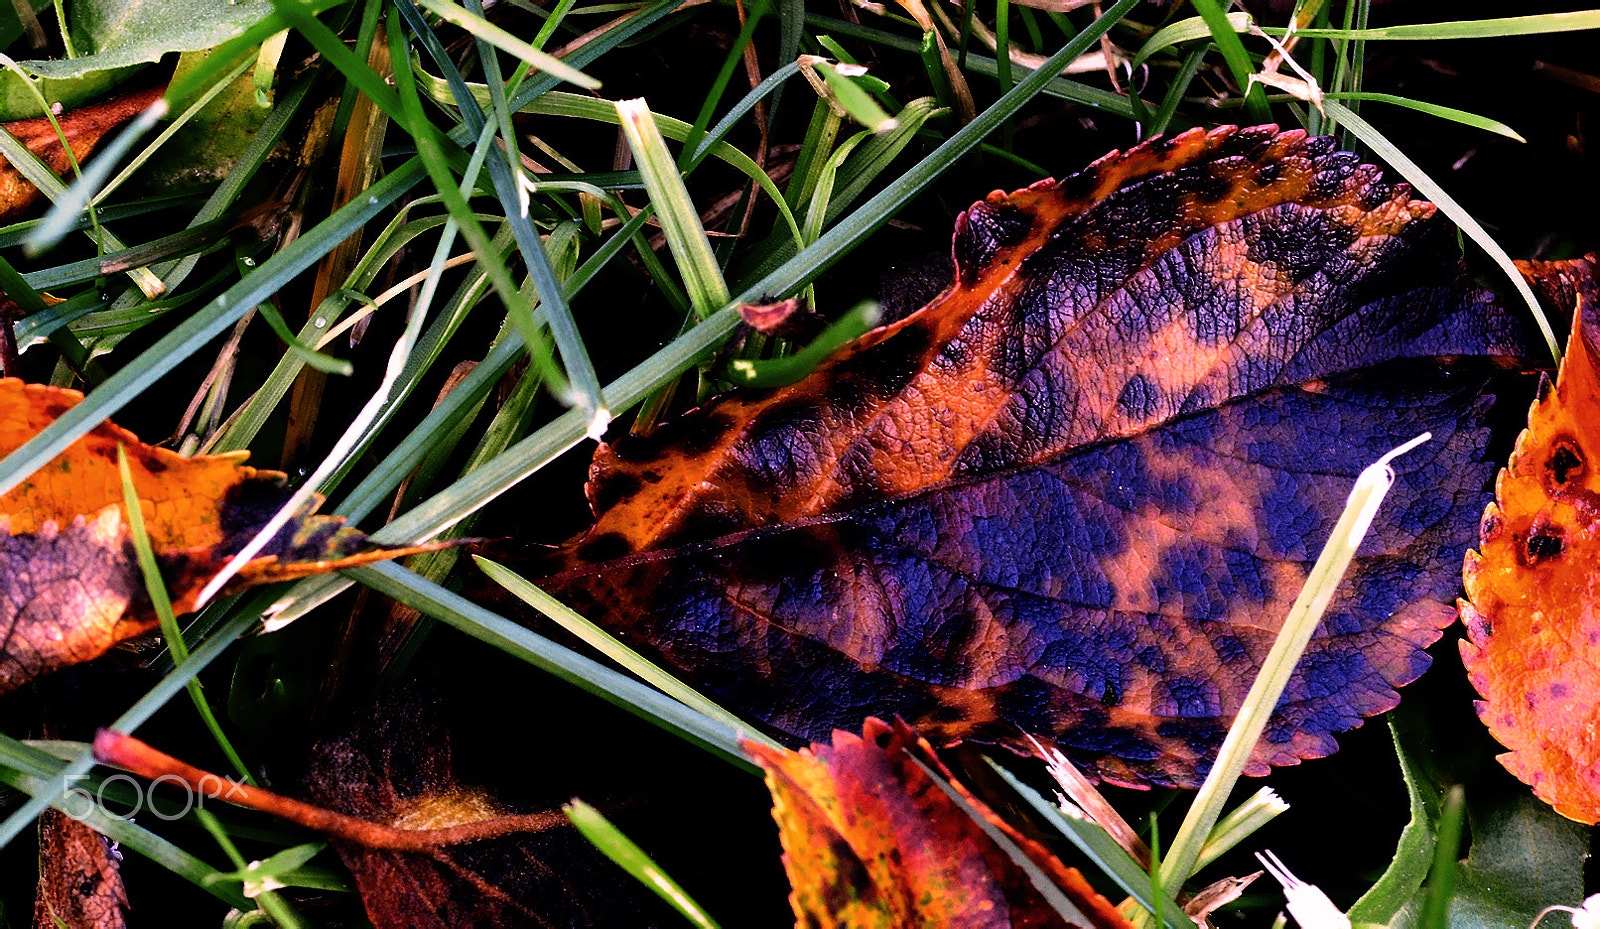 AF Zoom-Nikkor 35-70mm f/2.8D N sample photo. Autumn photography